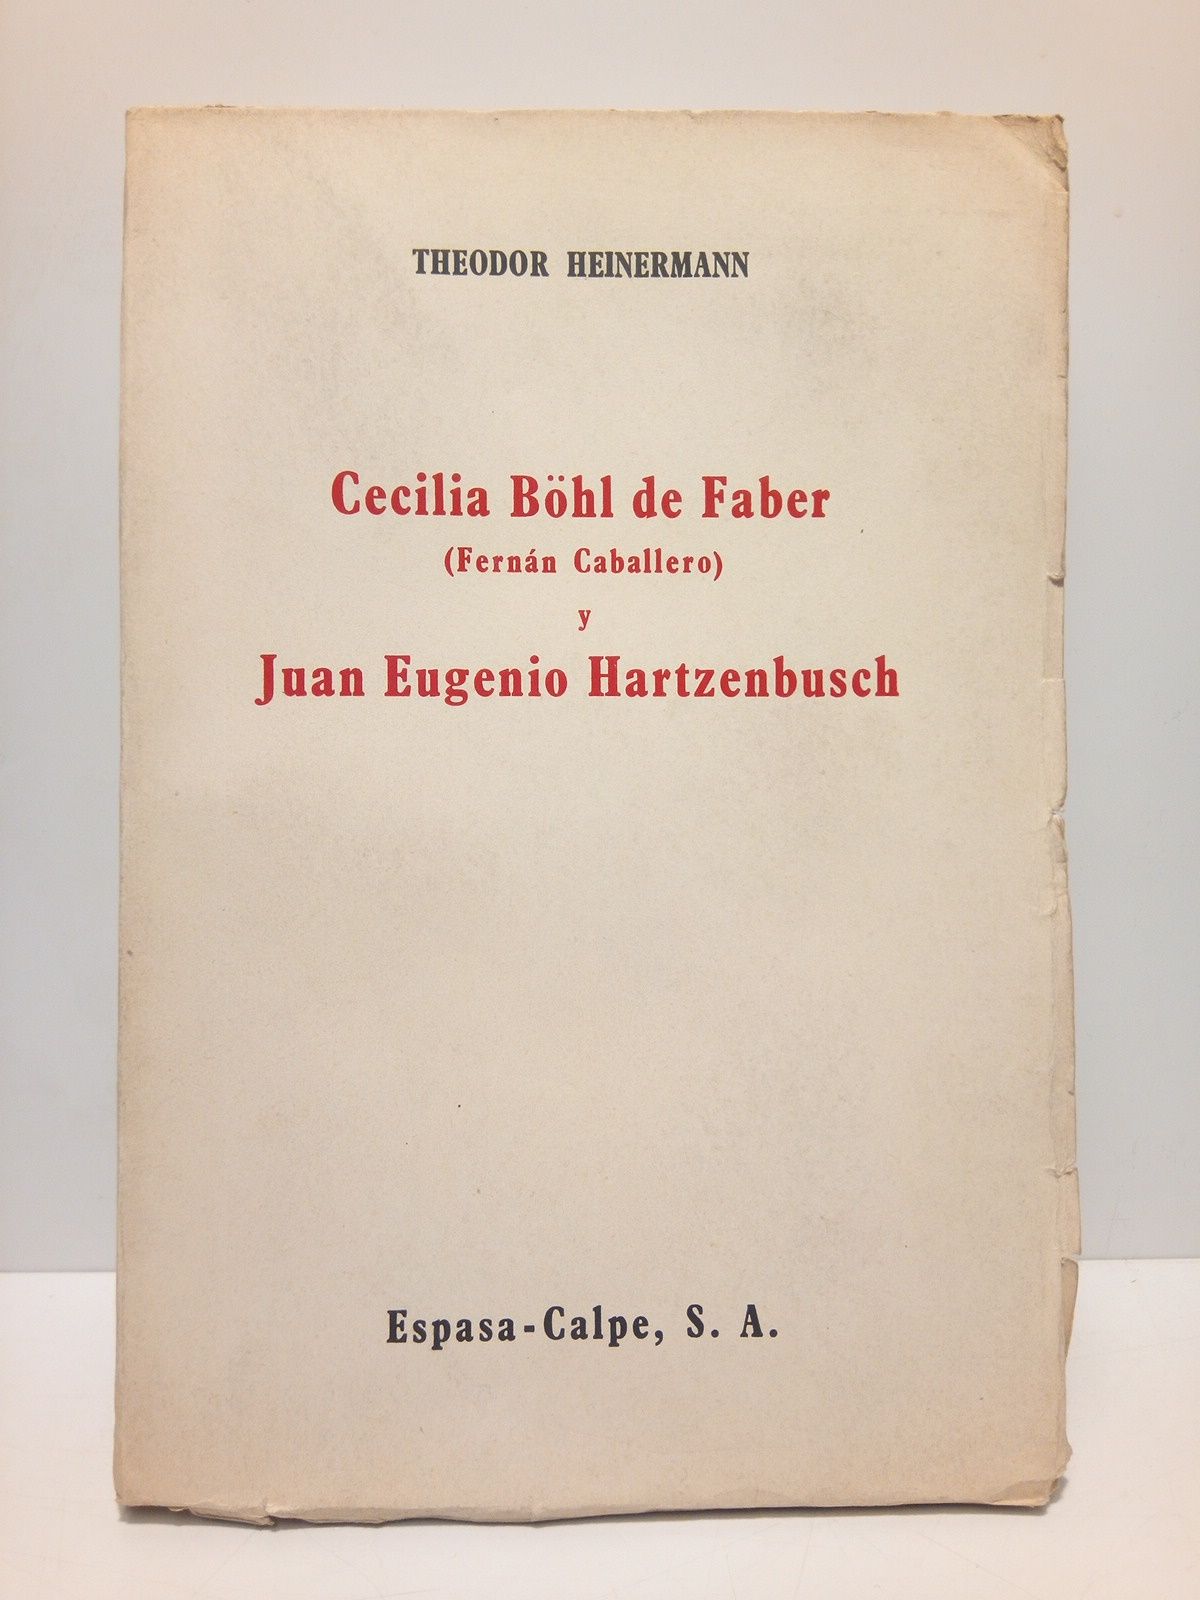 Cecilia Böhl de Faber "Fernan Caballero" y Juan Eugenio Hartzenbusch …